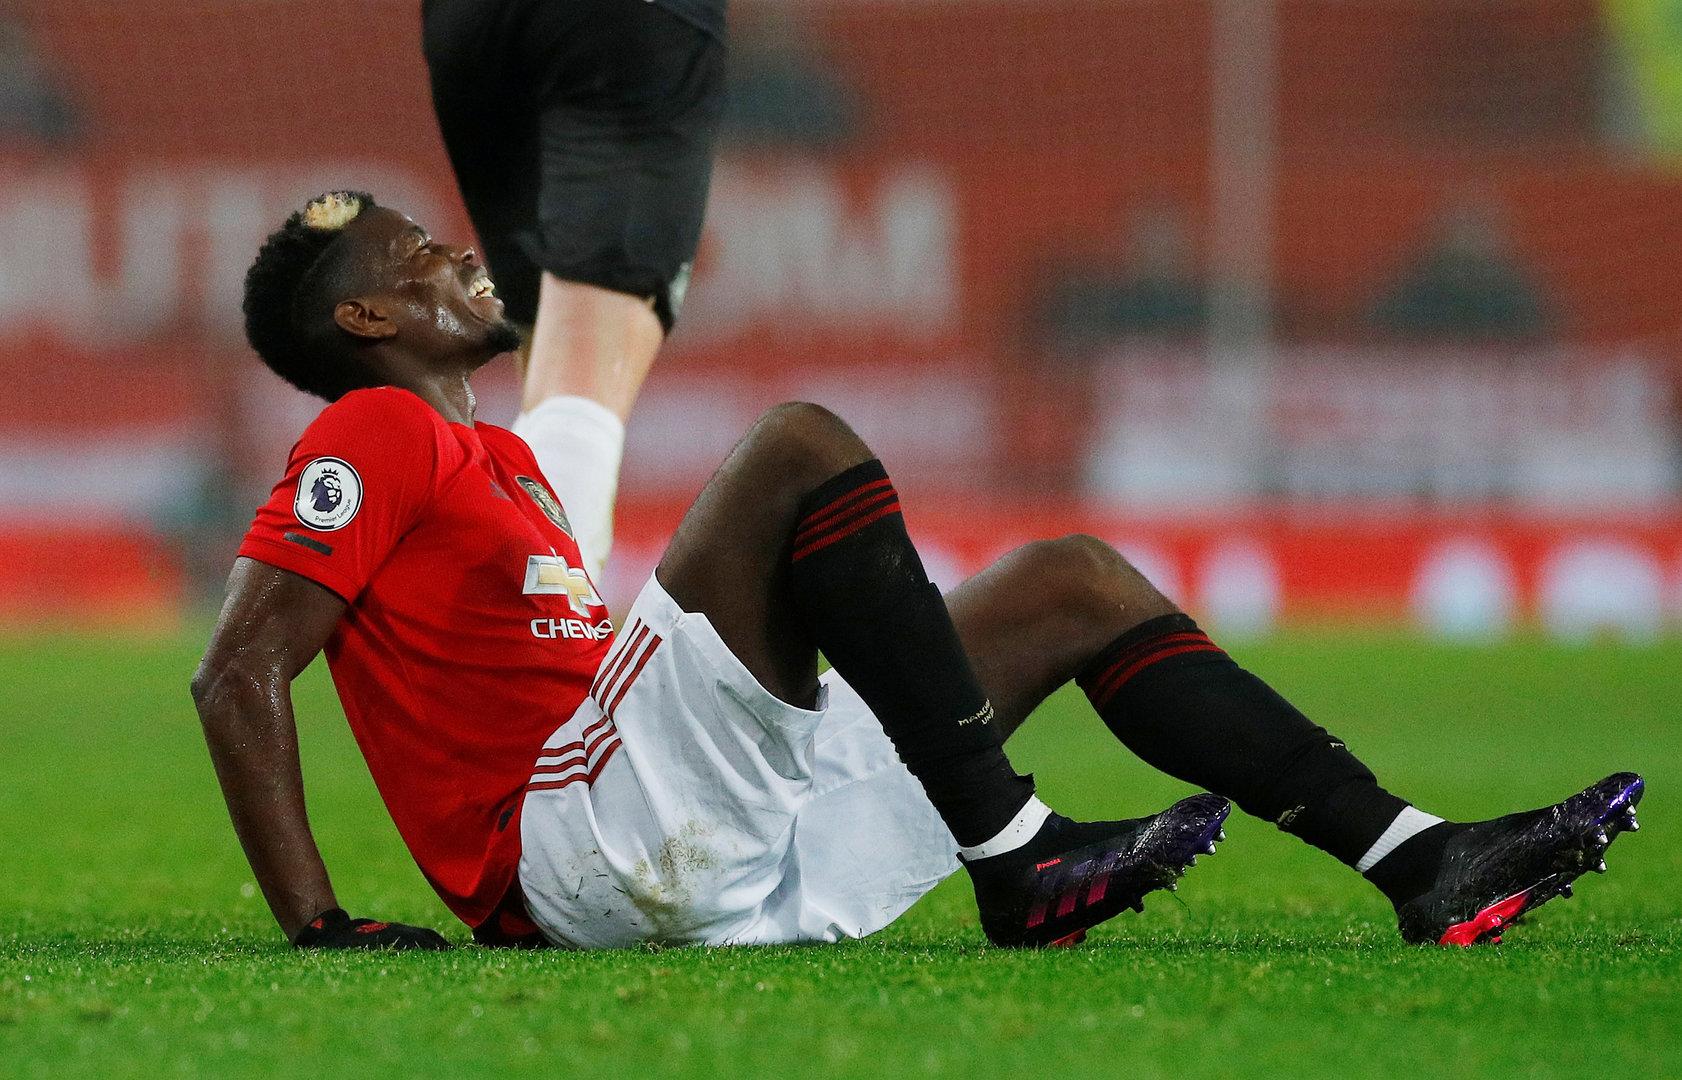 Manchester-United-Star Pogba unterzog sich Knöchel-Operation